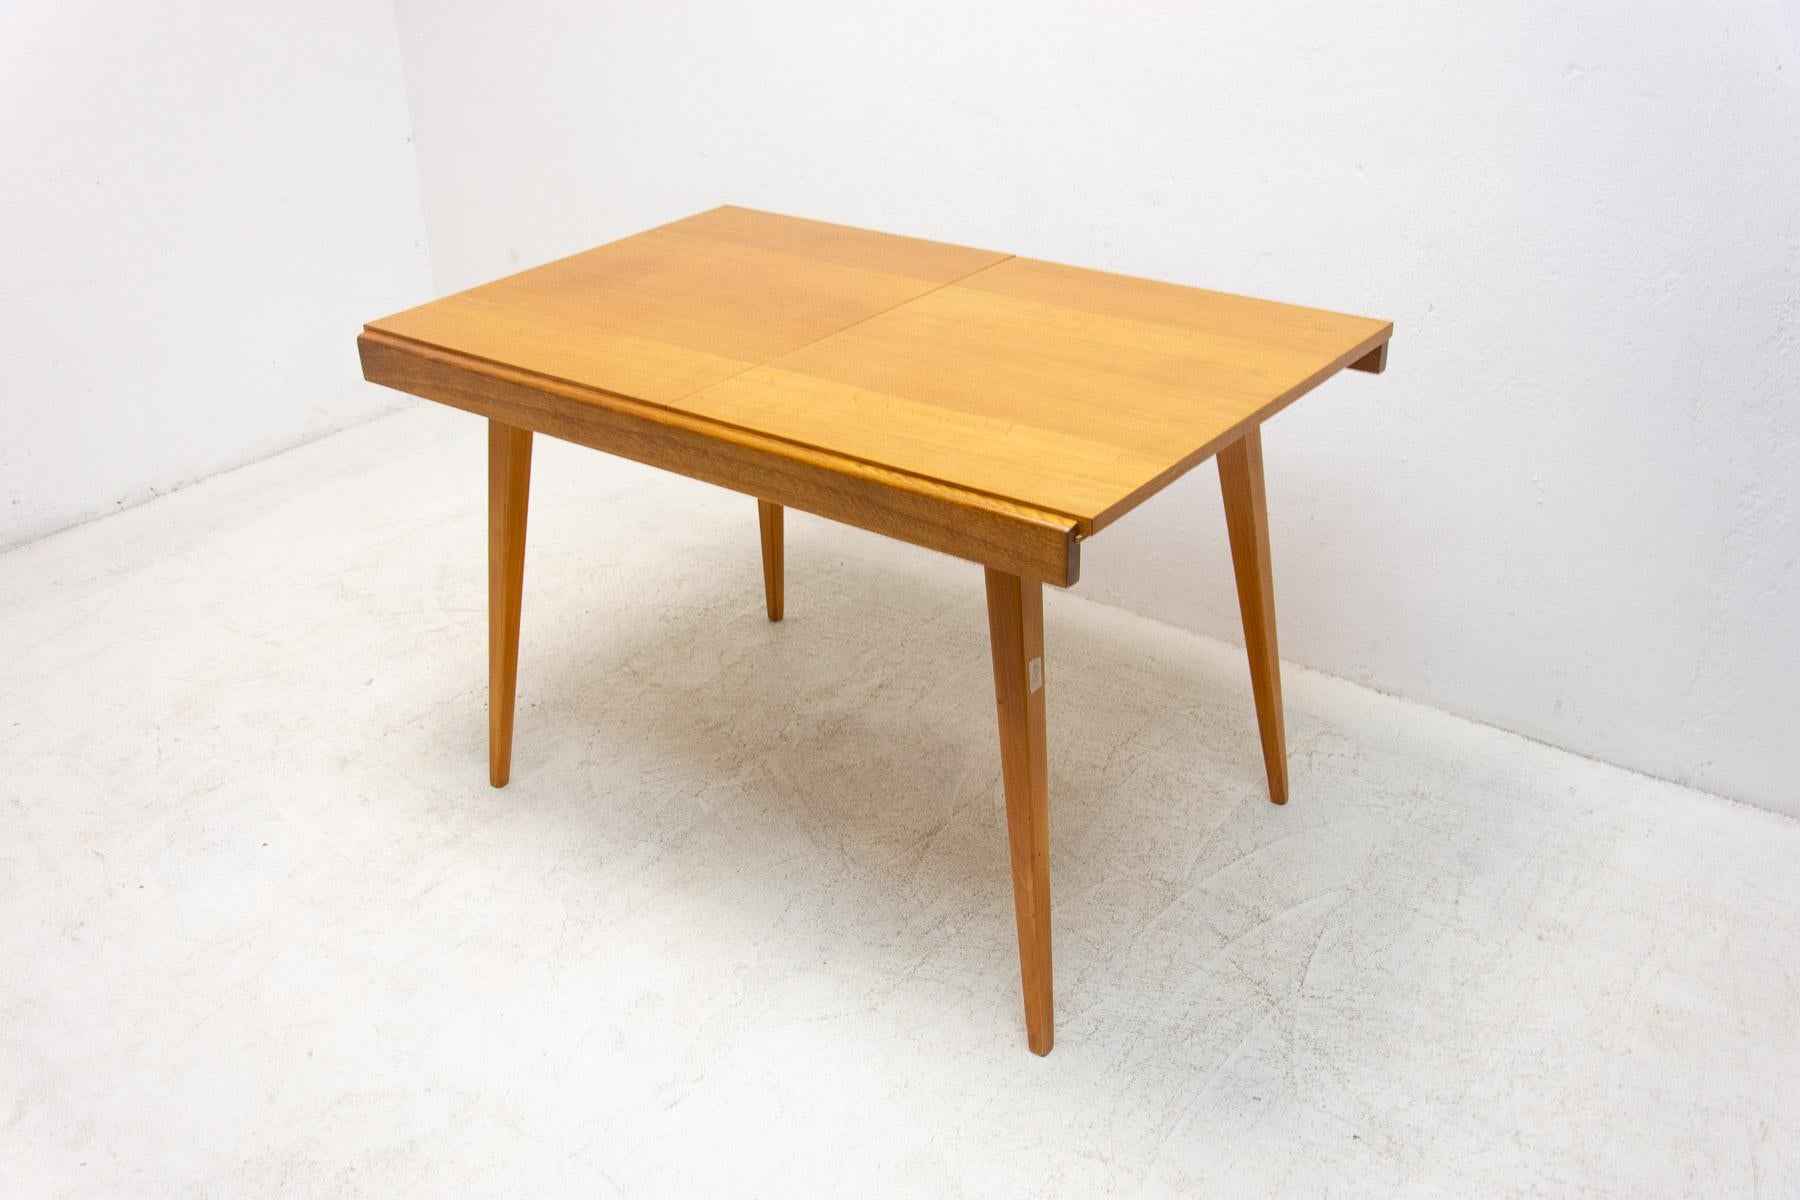 Cette table à manger réglable a été conçue par František Jirák pour Tatra nábytok dans les années 1970 et fabriquée dans l'ancienne Tchécoslovaquie dans les années 1970.  Il est fabriqué en bois de frêne et de hêtre.  La longueur est réglable de 120